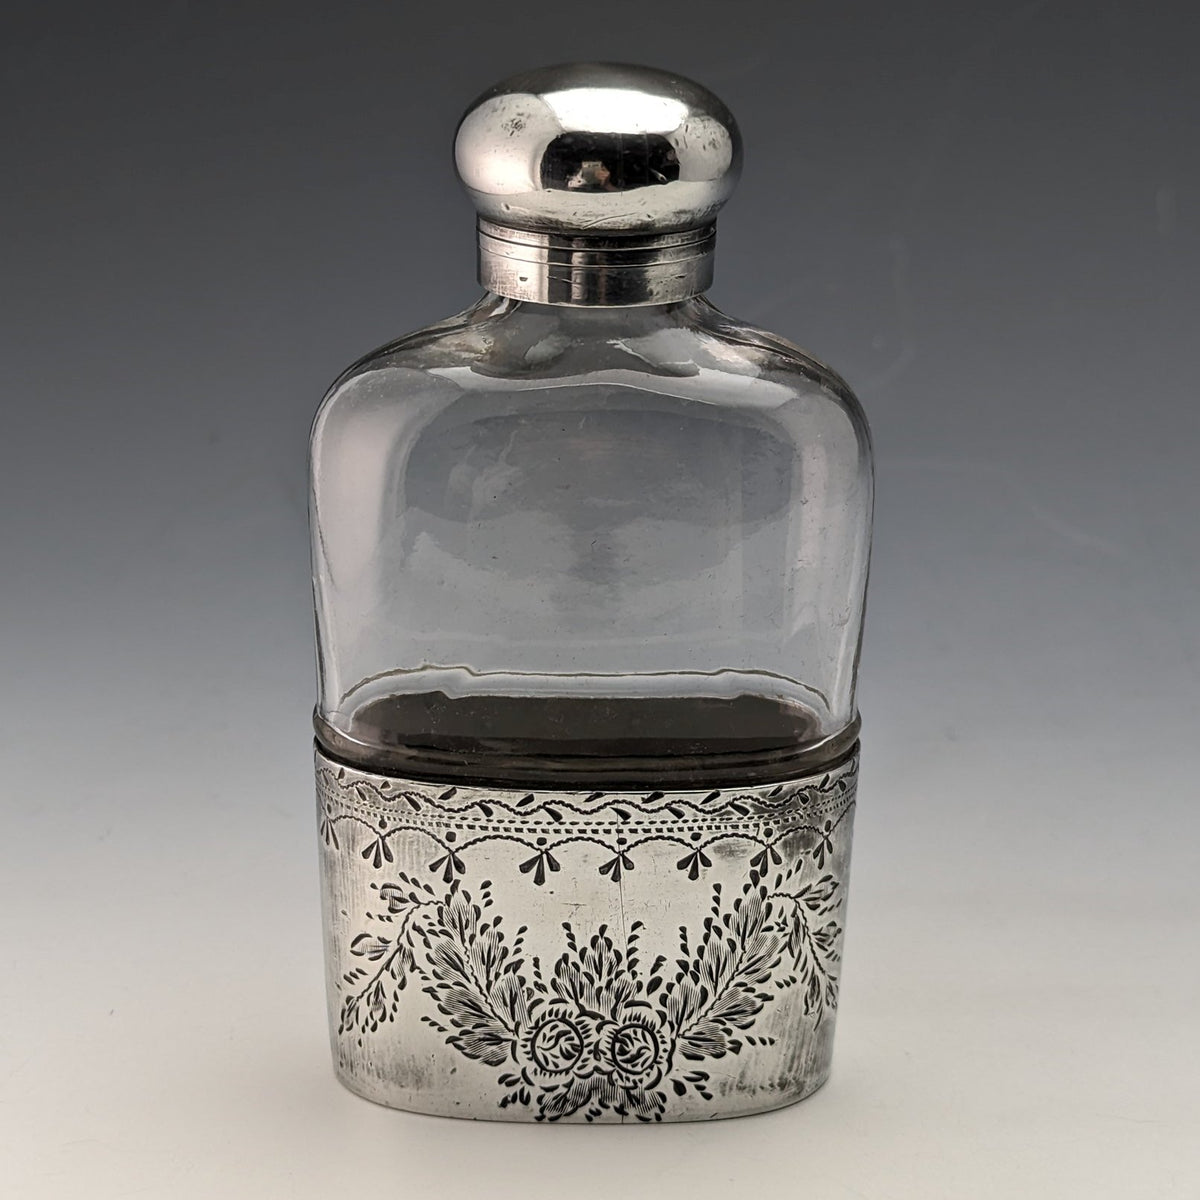 19世紀末頃 英国アンティーク シルバープレート装飾 ガラススキットル ヒップフラスコ目立った傷や汚れのない美品機能